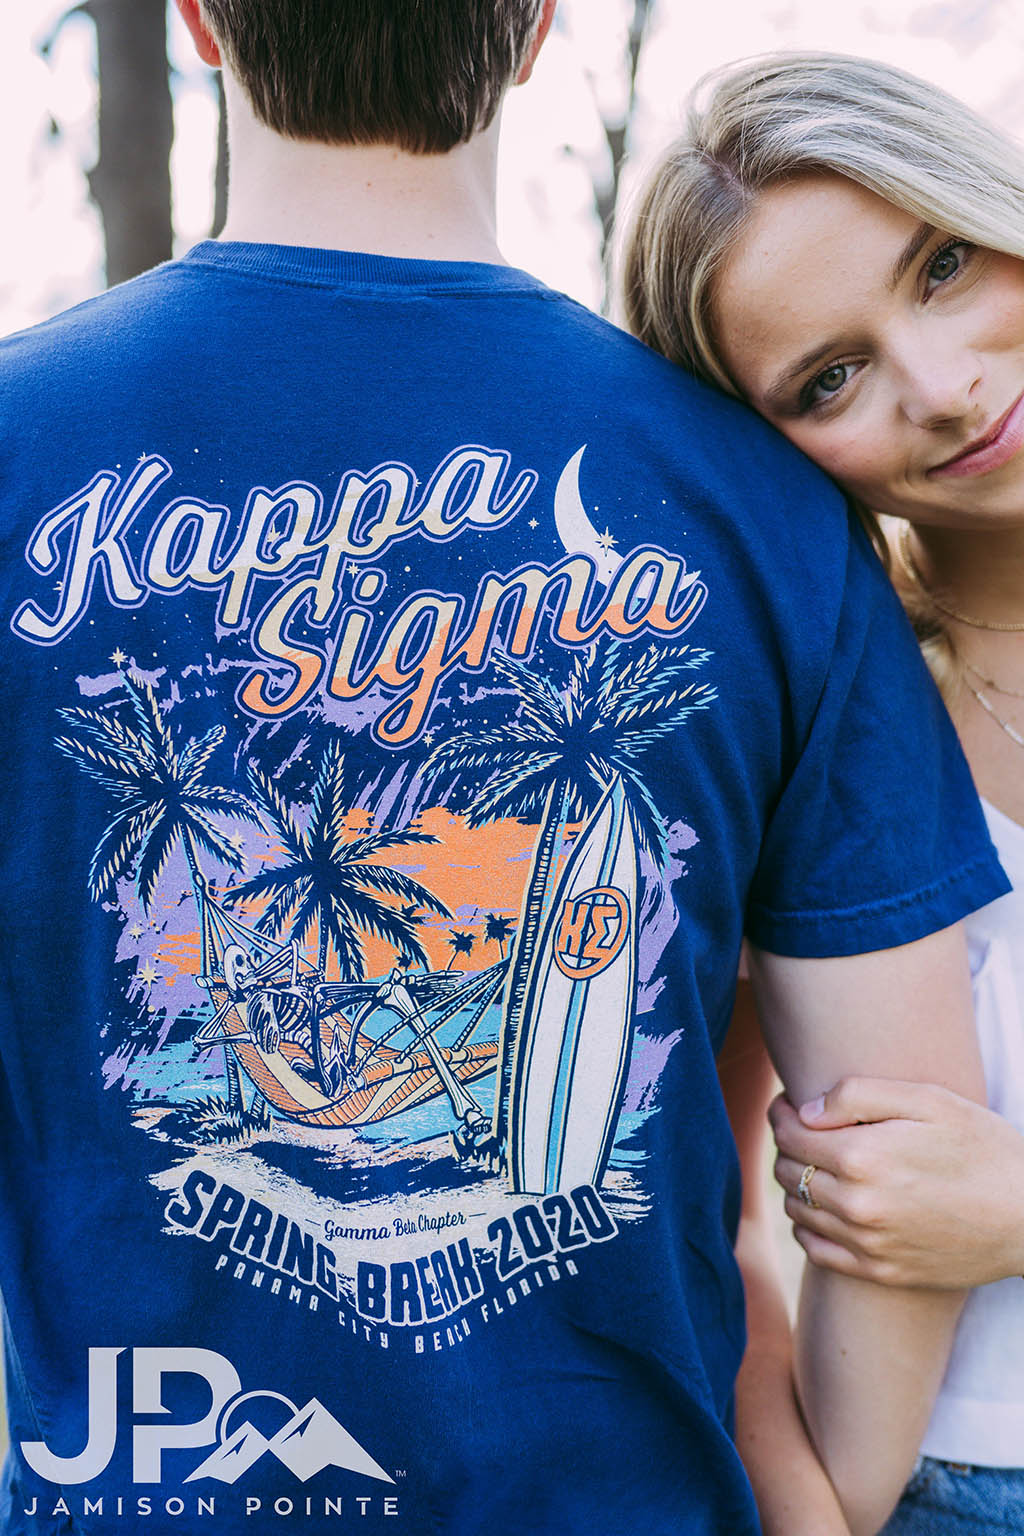 Kappa Sigma Spring Break Tshirt